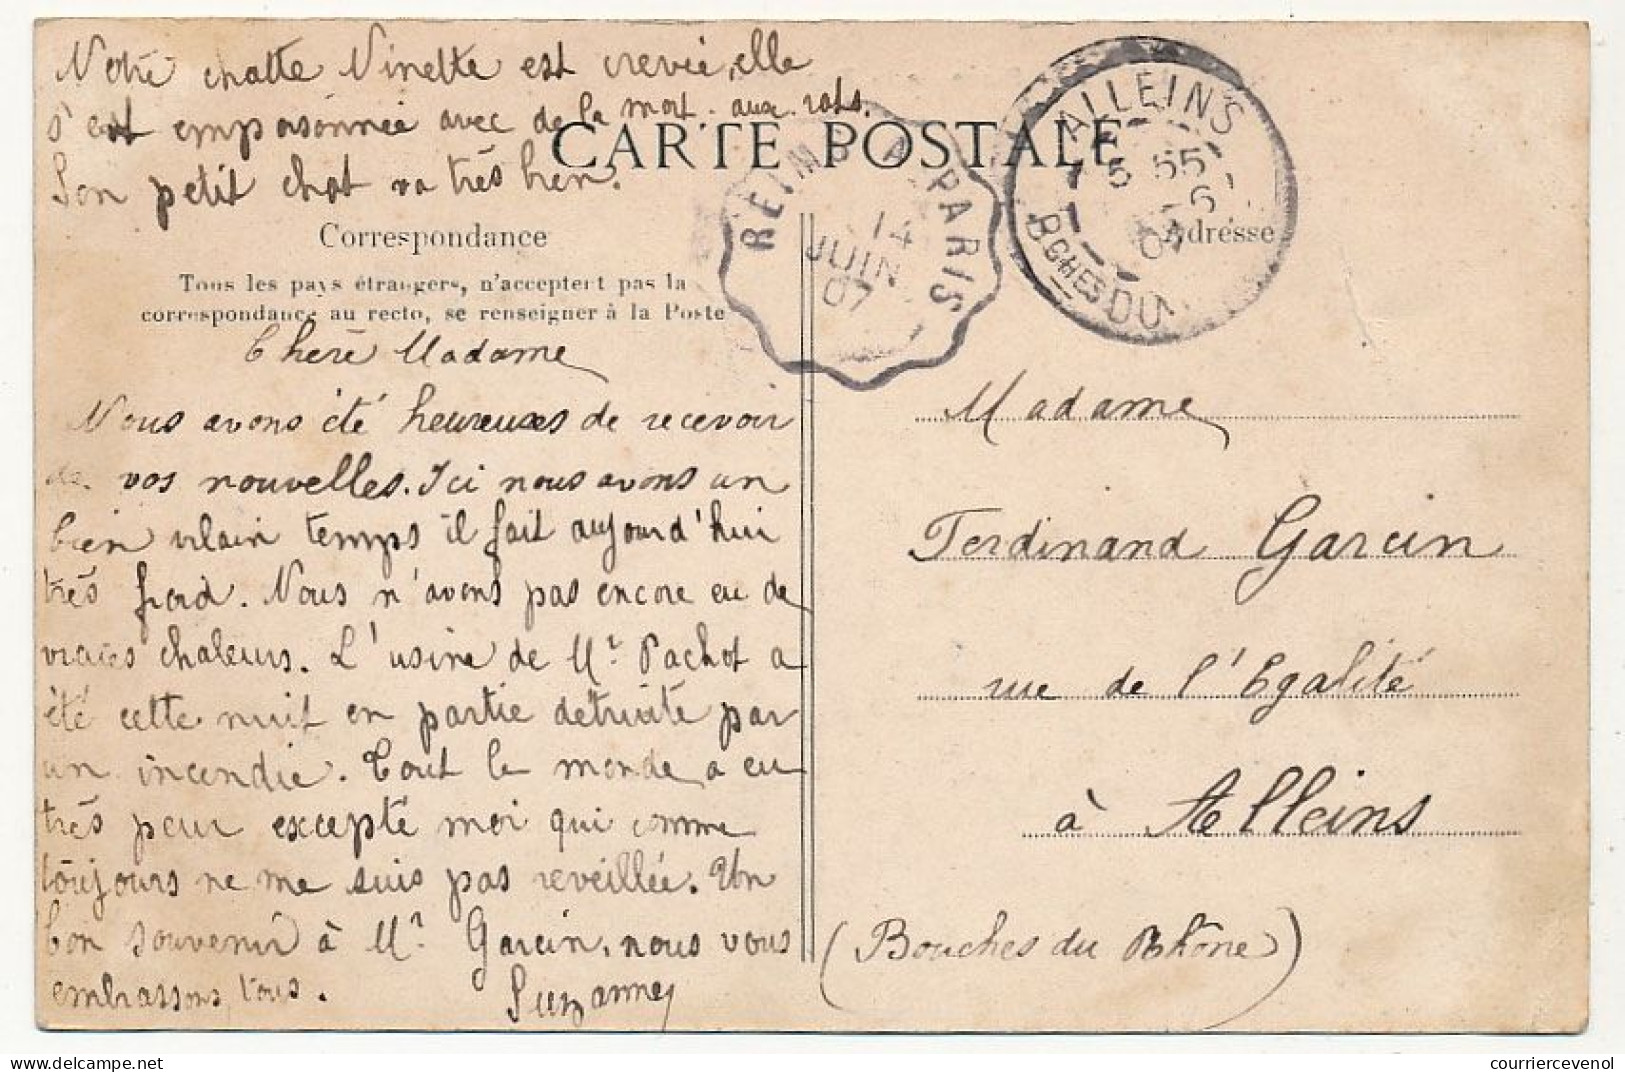 4 CPA - LIVRY (Seine et Oise) - 4 cartes ayant voyagé : Rue de Meaux, L'Abbaye, le Marché, Place de la Fontaine